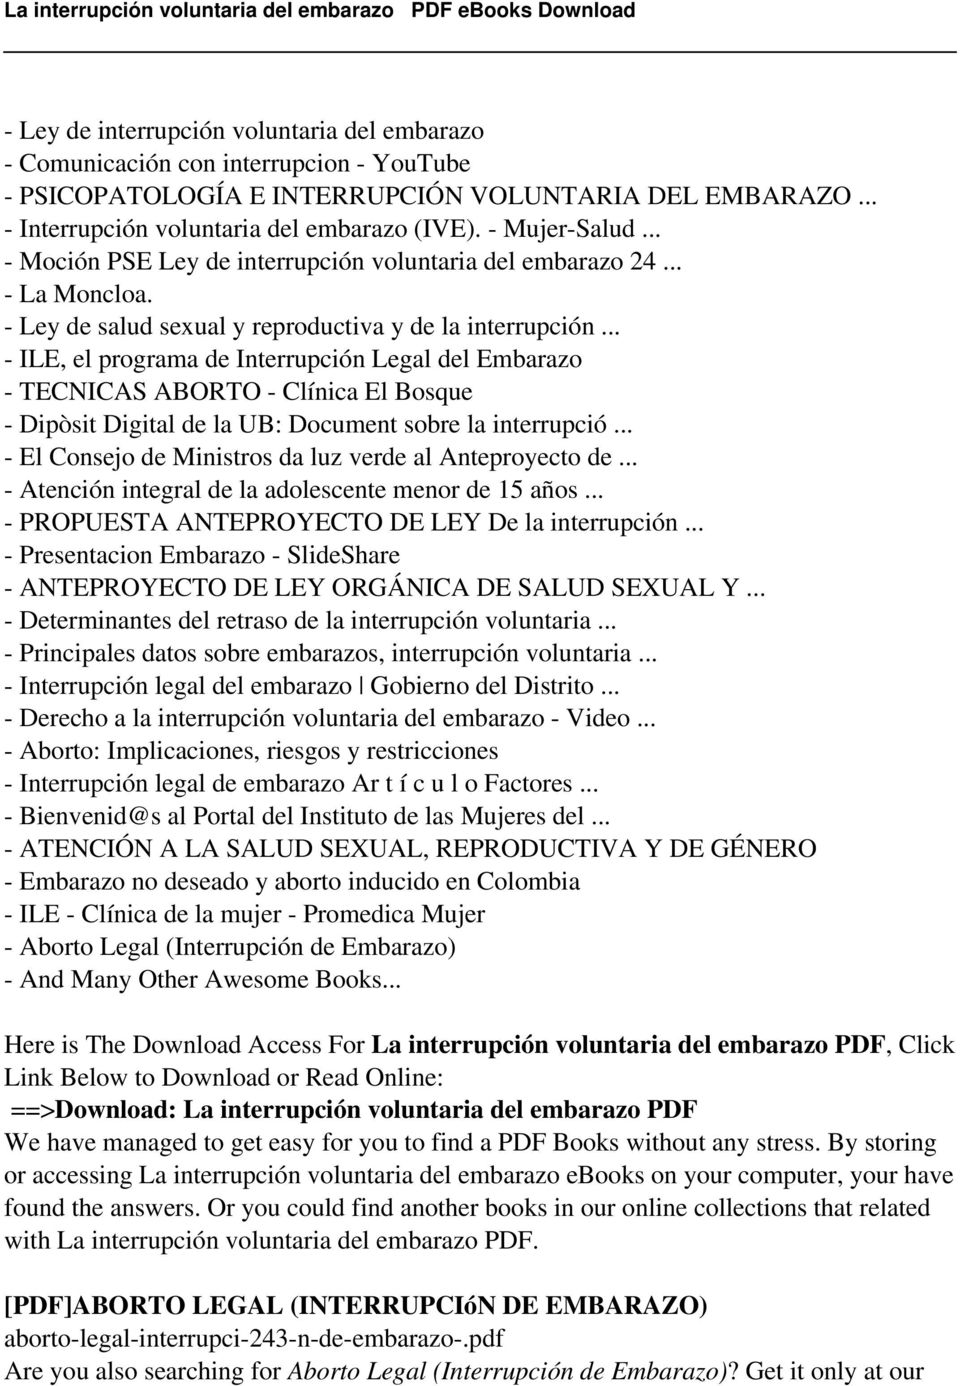 .. - ILE, el programa de Interrupción Legal del Embarazo - TECNICAS ABORTO - Clínica El Bosque - Dipòsit Digital de la UB: Document sobre la interrupció.